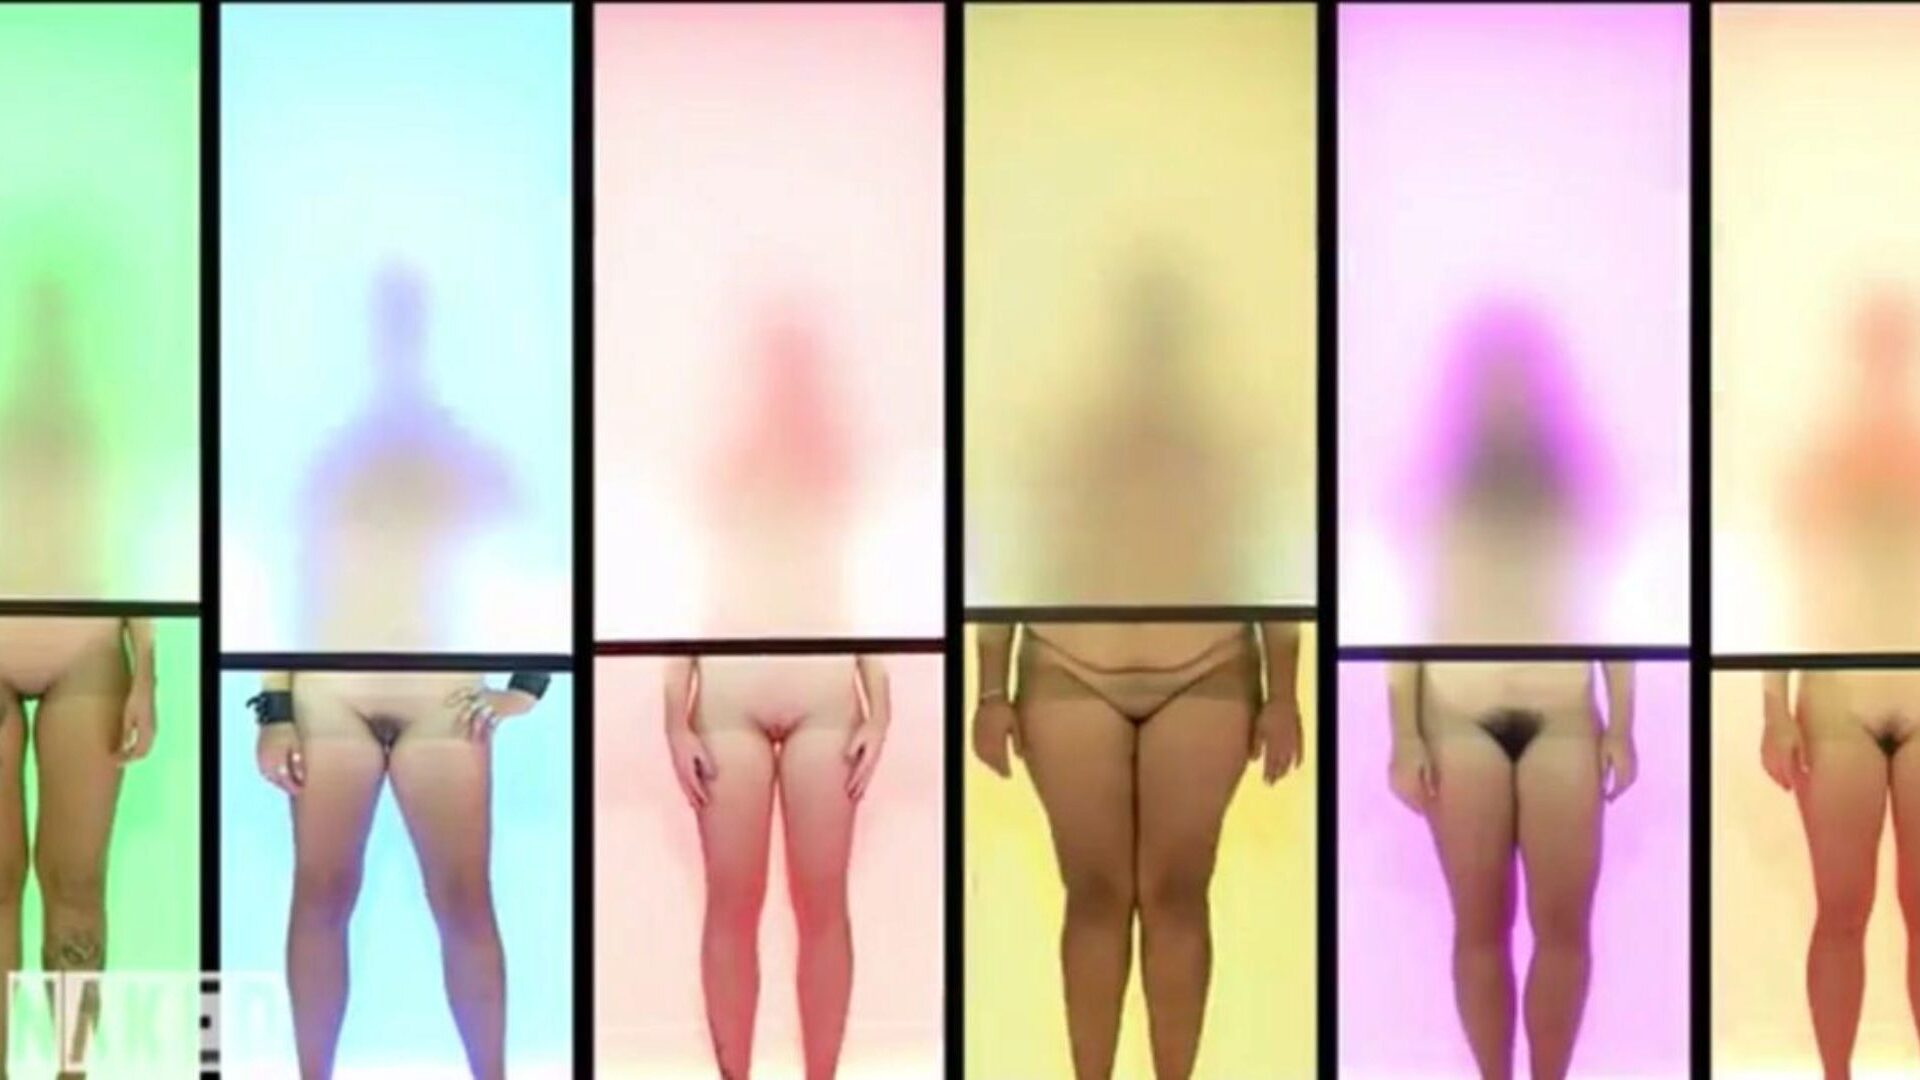 attrazione nuda versione tedesca clip 7, porno c3: xhamster guarda attrazione nuda versione tedesca clip 7 film su xhamster, il più eccellente sito di tube di fuckfest hd con tonnellate di tedeschi nudi tedeschi e clip porno nudi